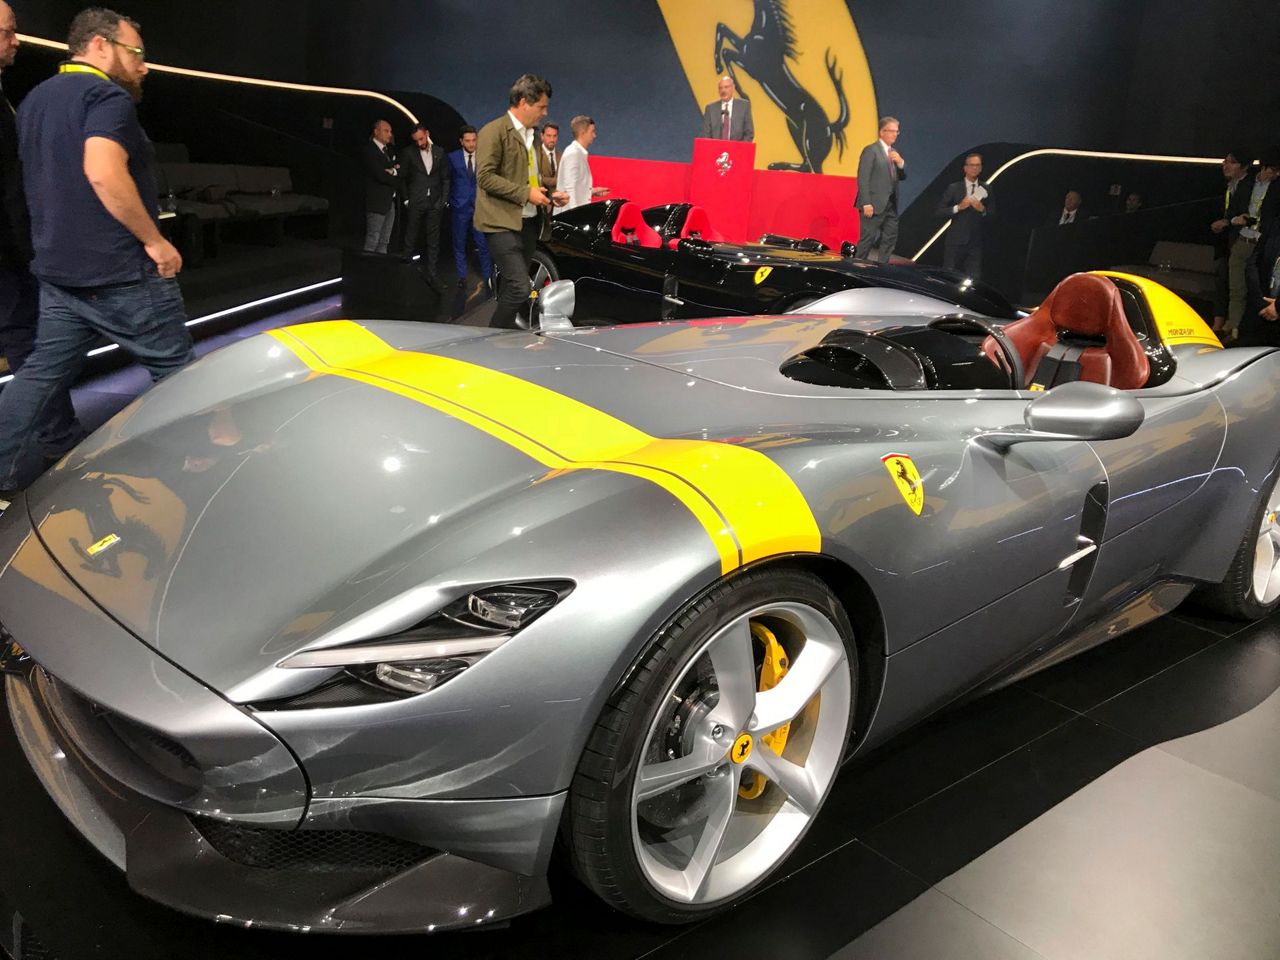 Ferrari unveils open-cockpit model as it outlines new plans